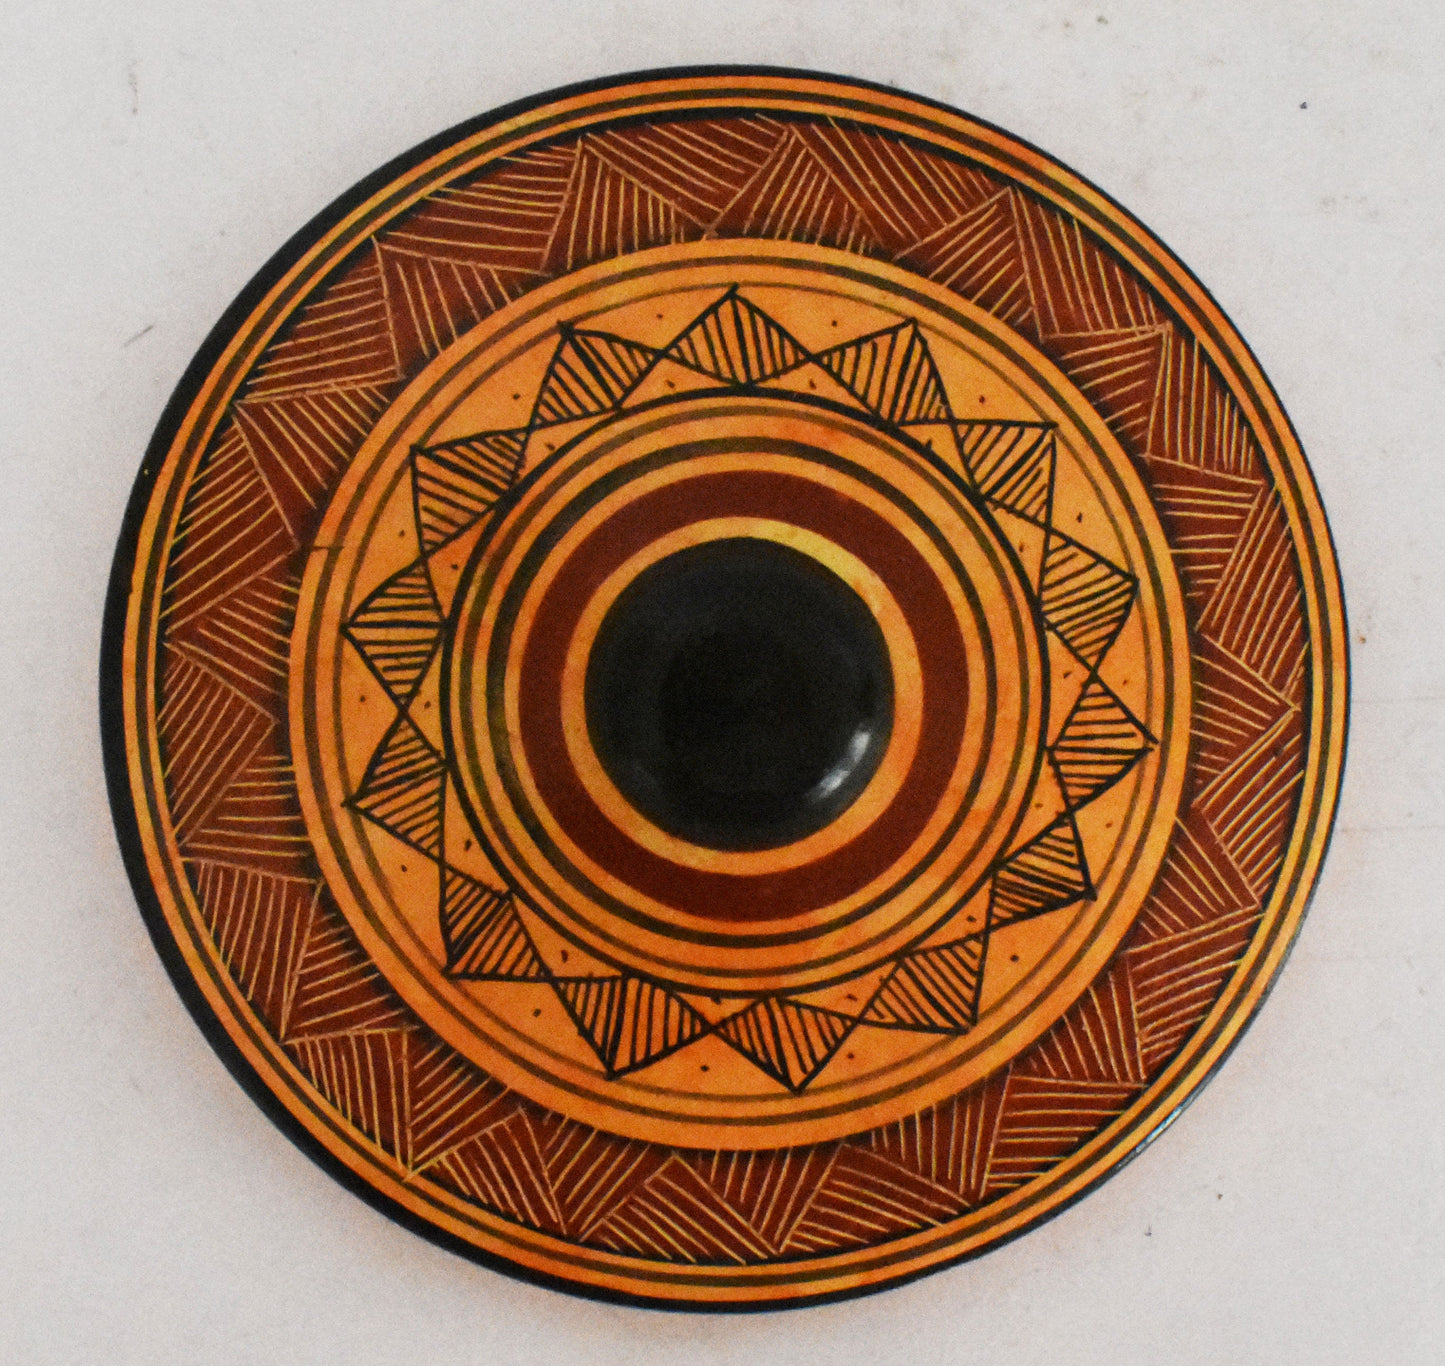 Geometric period Vessel - Animals and Meander Design - Ceramic Vase